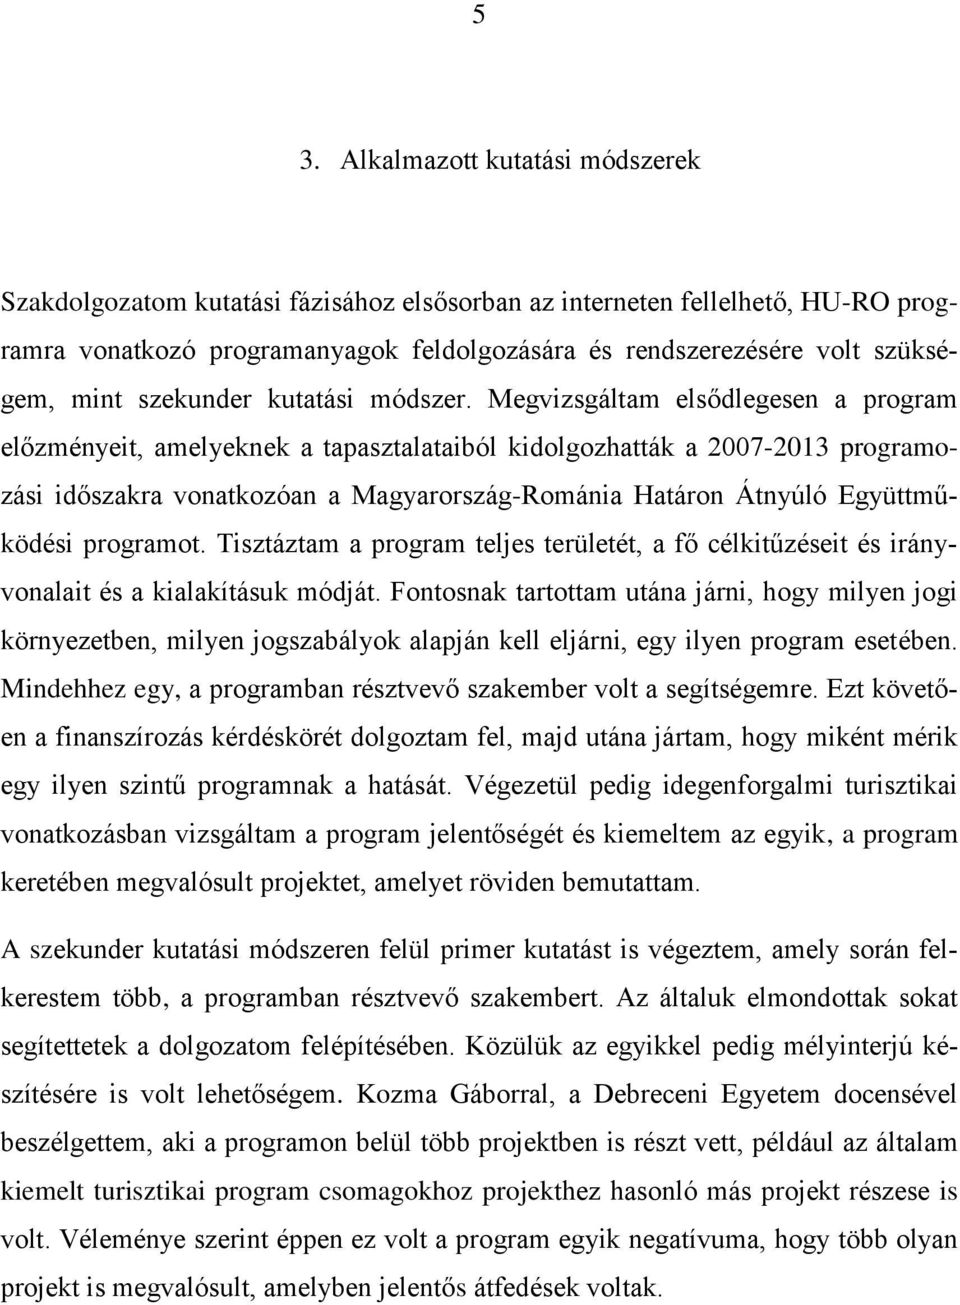 Megvizsgáltam elsődlegesen a program előzményeit, amelyeknek a tapasztalataiból kidolgozhatták a 2007-2013 programozási időszakra vonatkozóan a Magyarország-Románia Határon Átnyúló Együttműködési